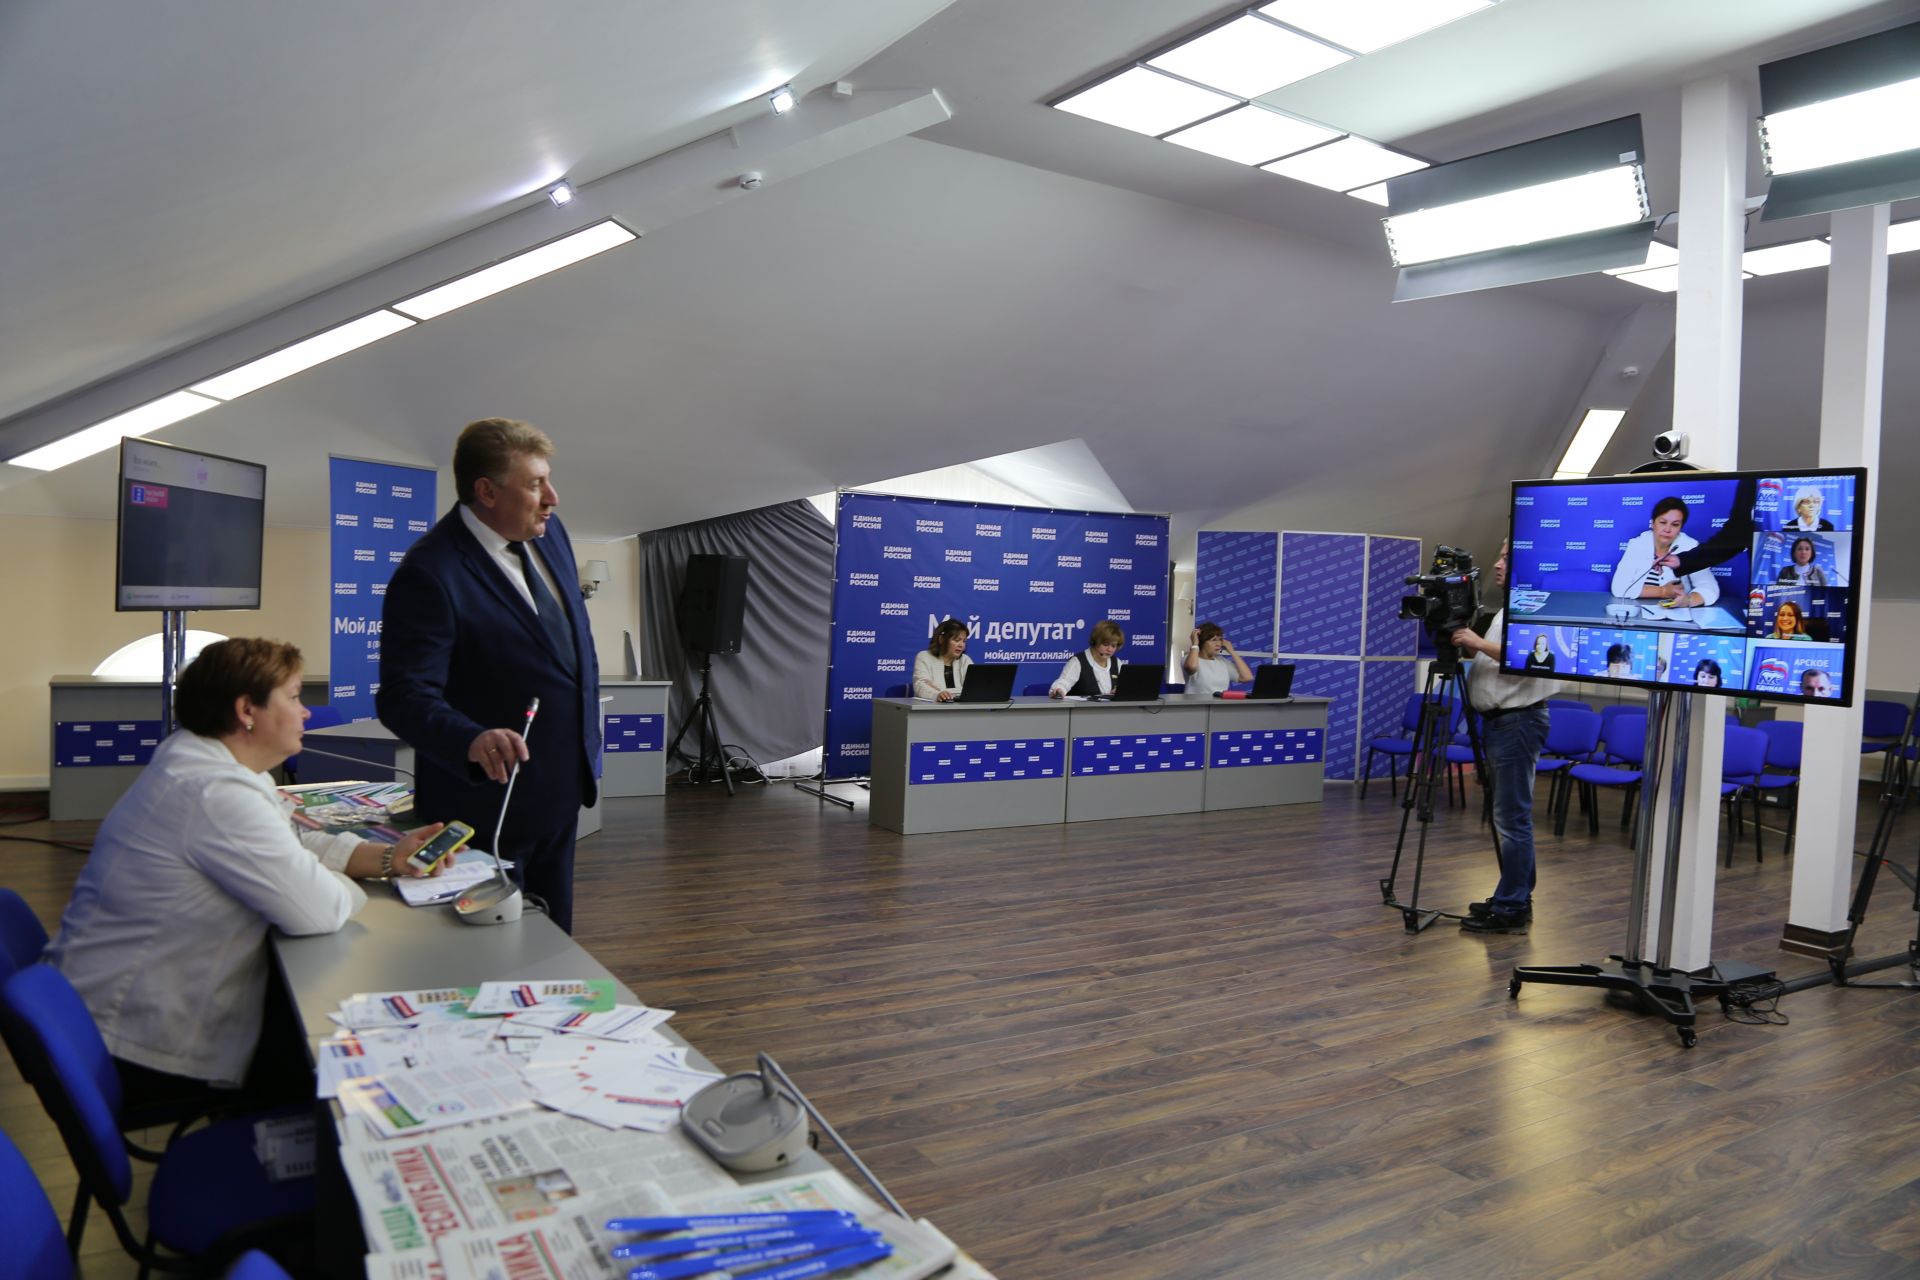 Татарстанская «Единая Россия» создала ситуационный центр для мобилизации перед выборами в Госсовет РТ